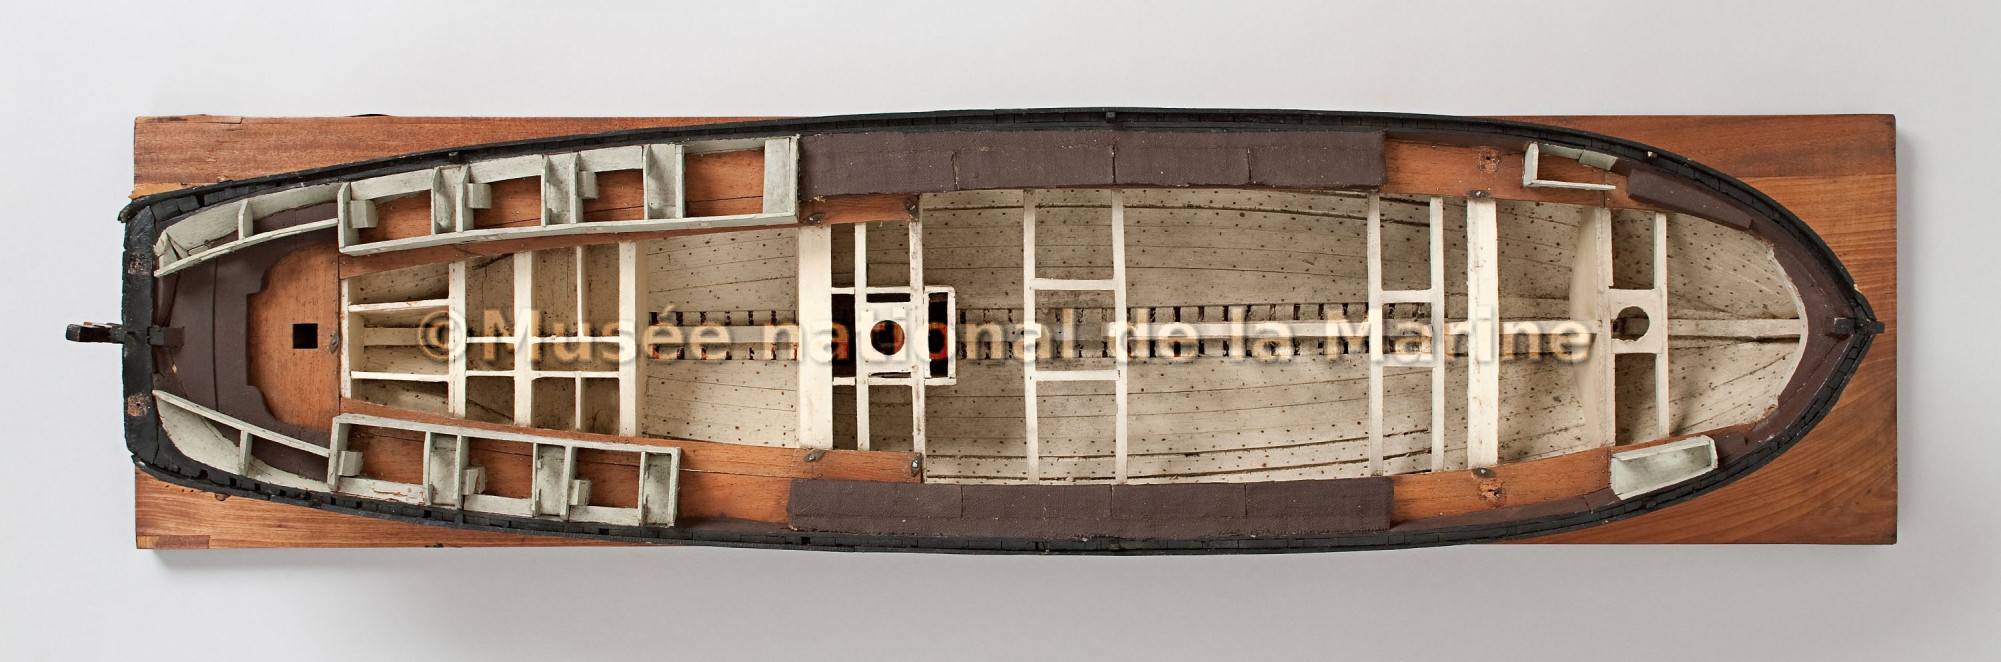 Bayadère, corvette de 22 canons, 1811